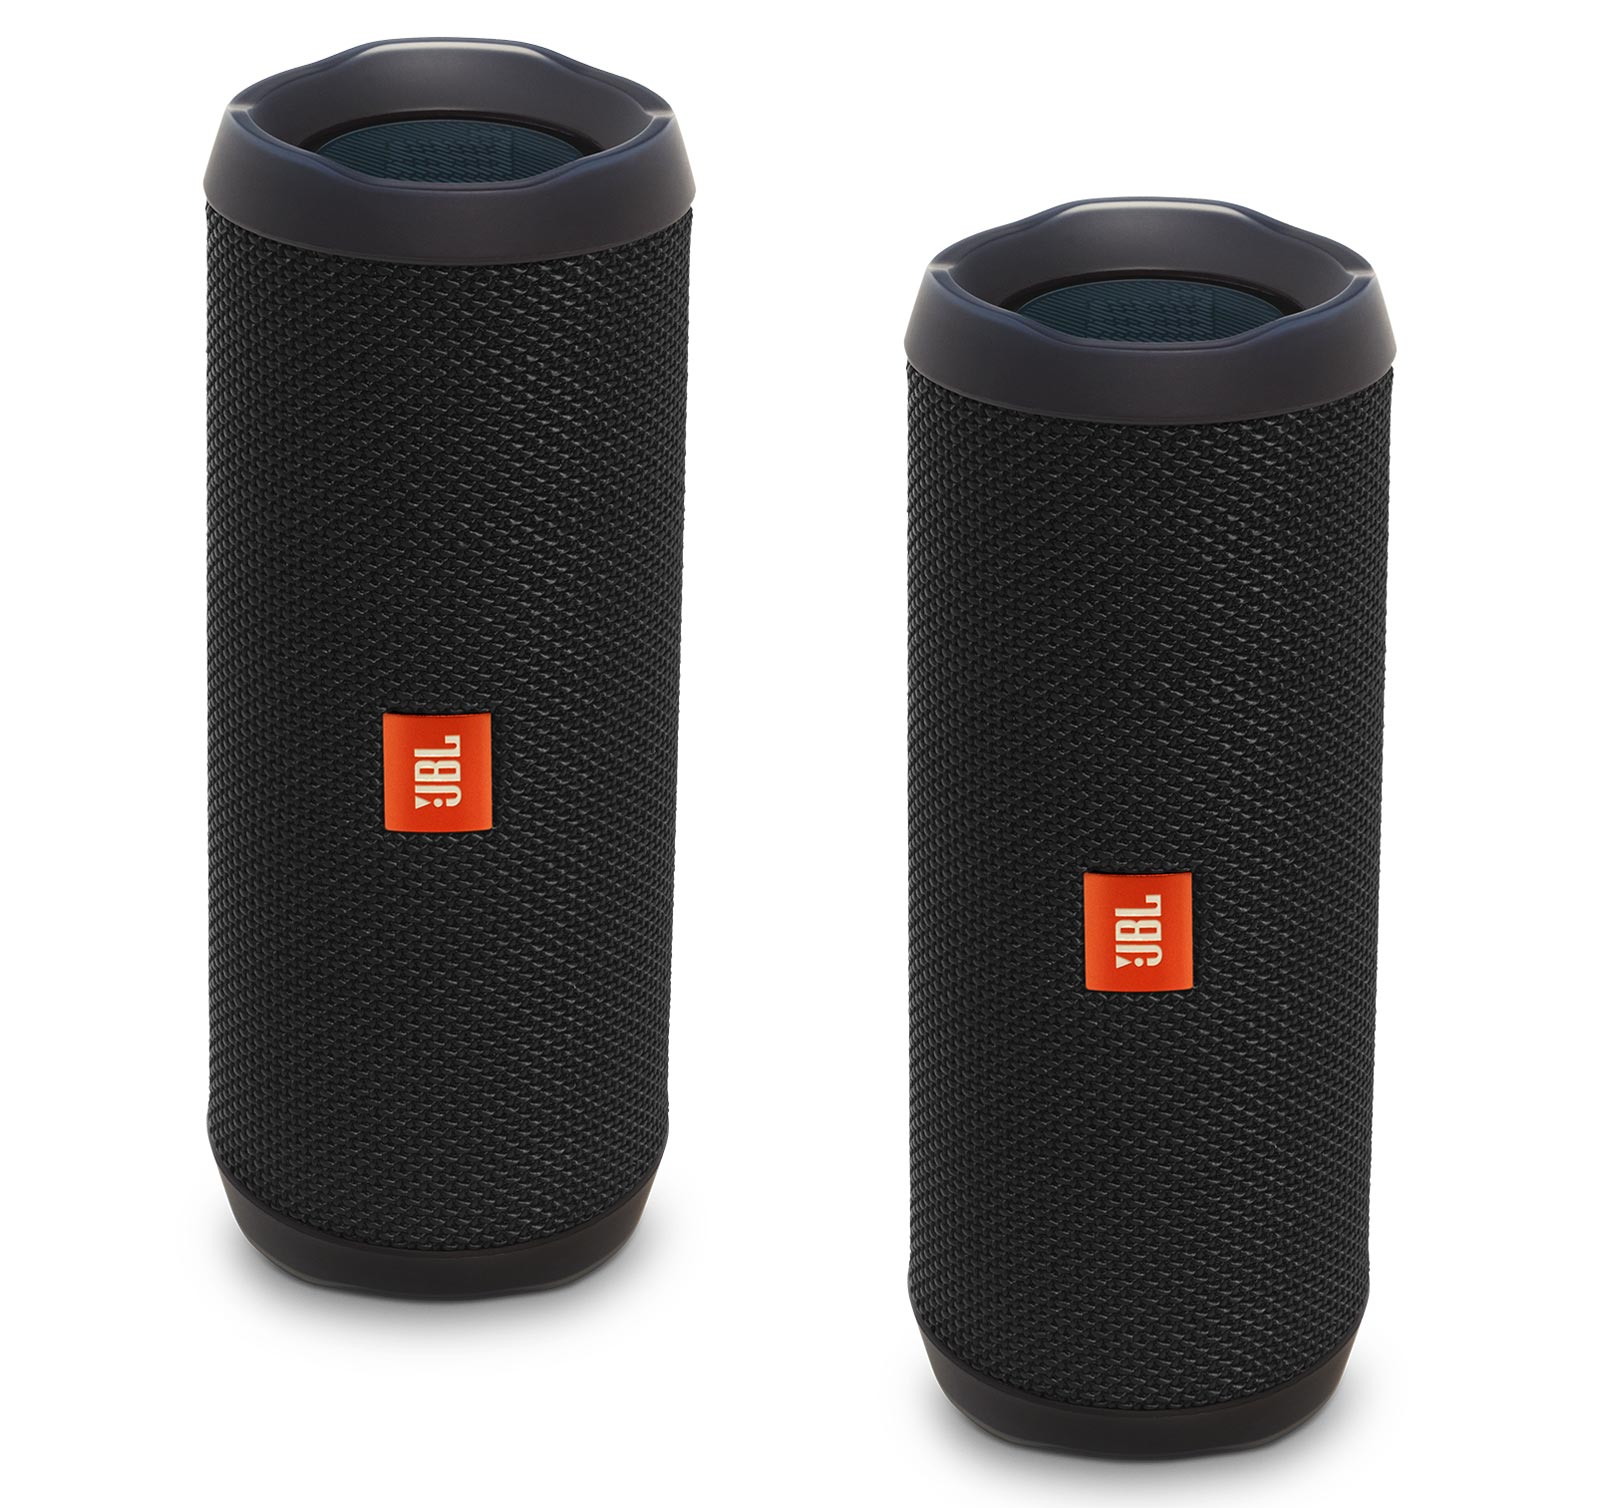 JBL Portable Bluetooth Speaker with Waterproof, Black, JBLFLIP4BLKAMx2 - image 1 of 4